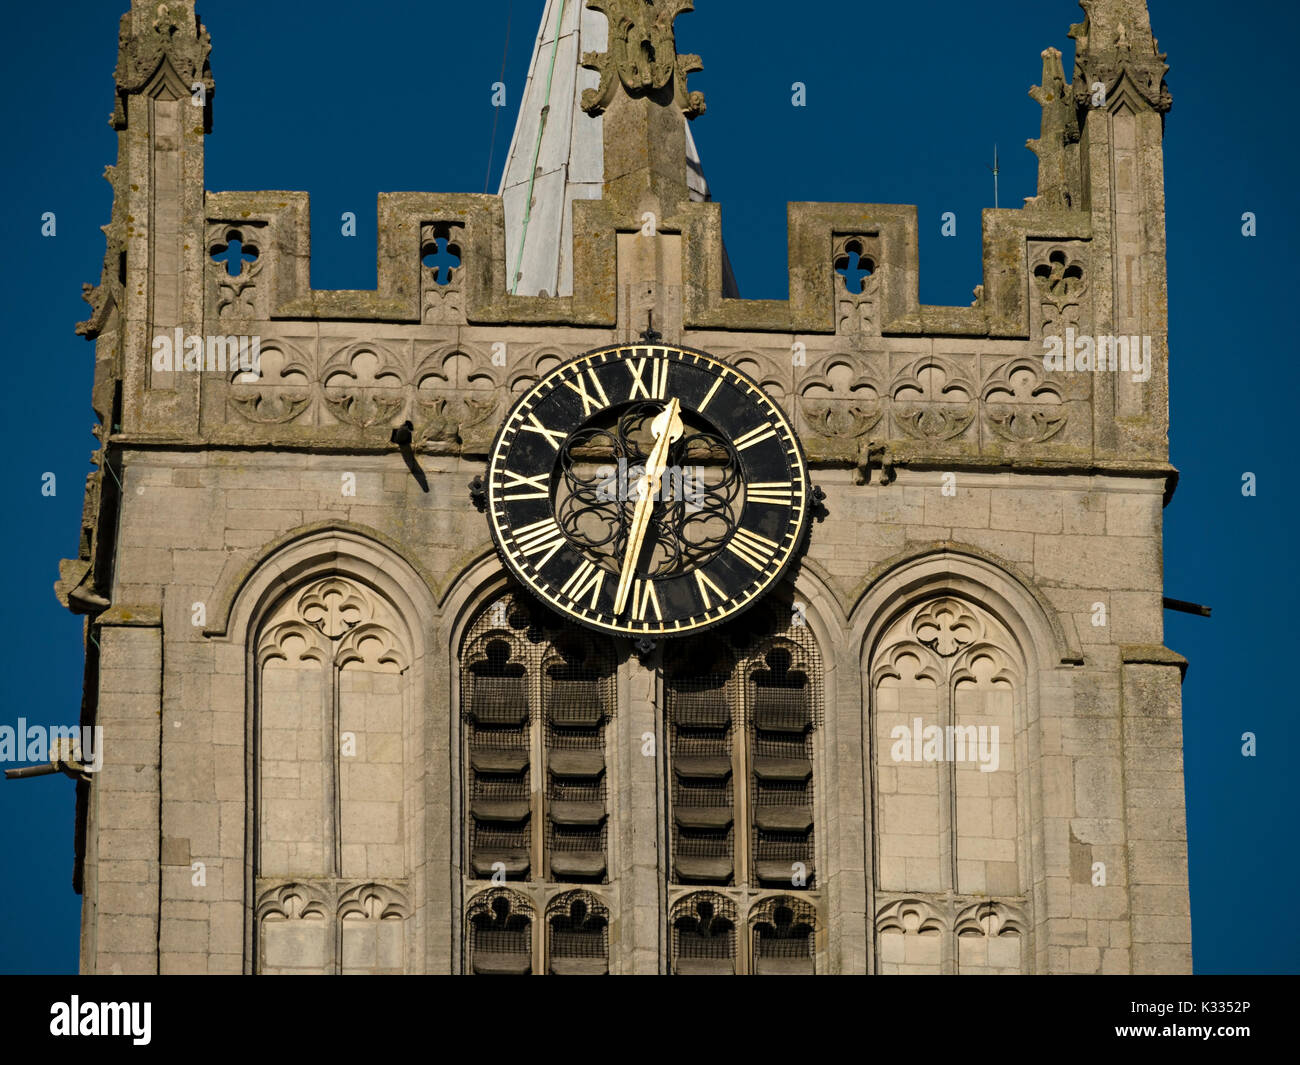 Horloge ensoleillée avec chiffres romains dorés et visage noir sur la tour de l'église en pierre Banque D'Images